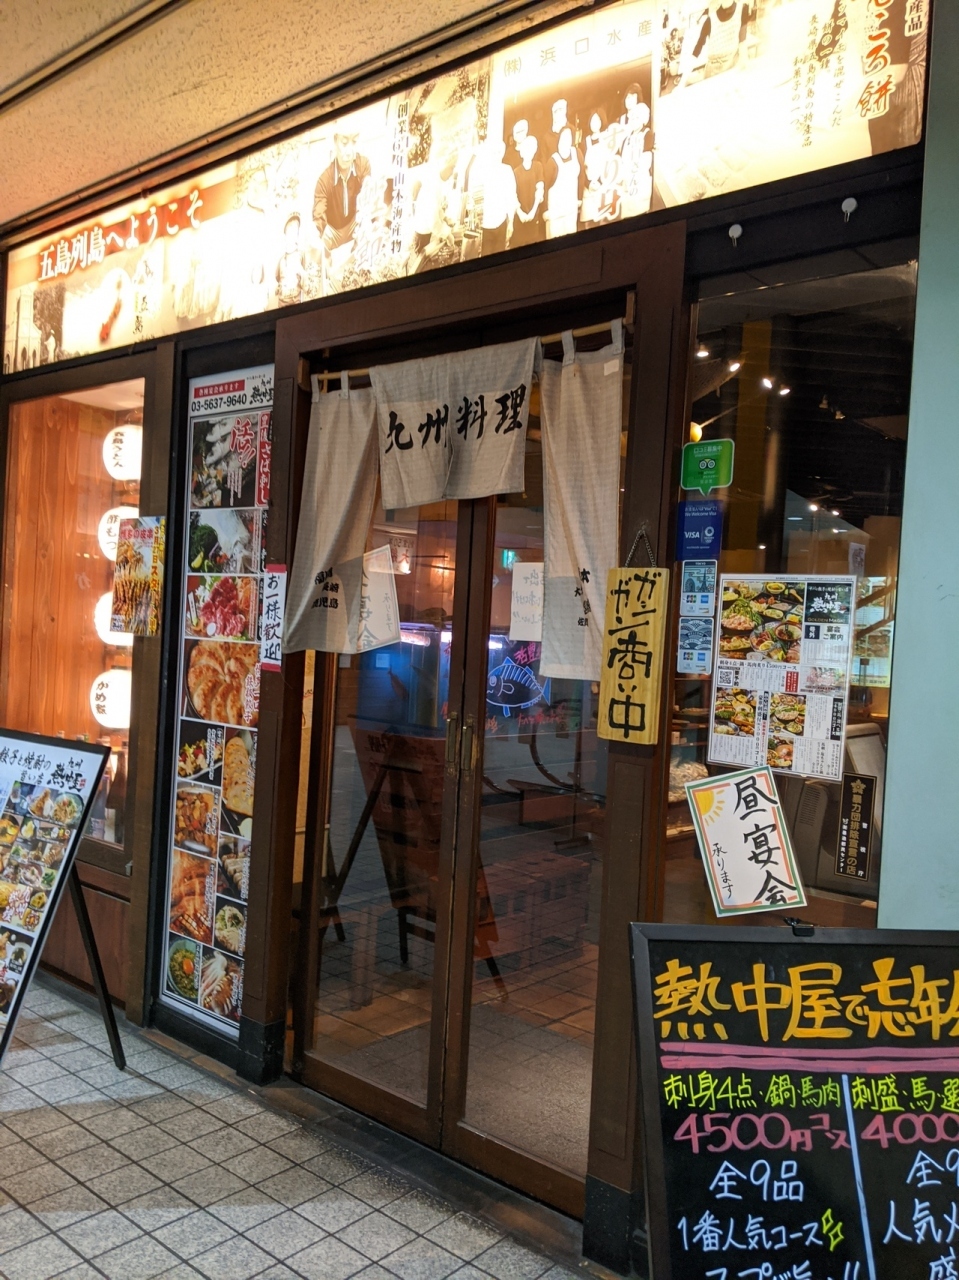 九州料理の居酒屋チェーン店